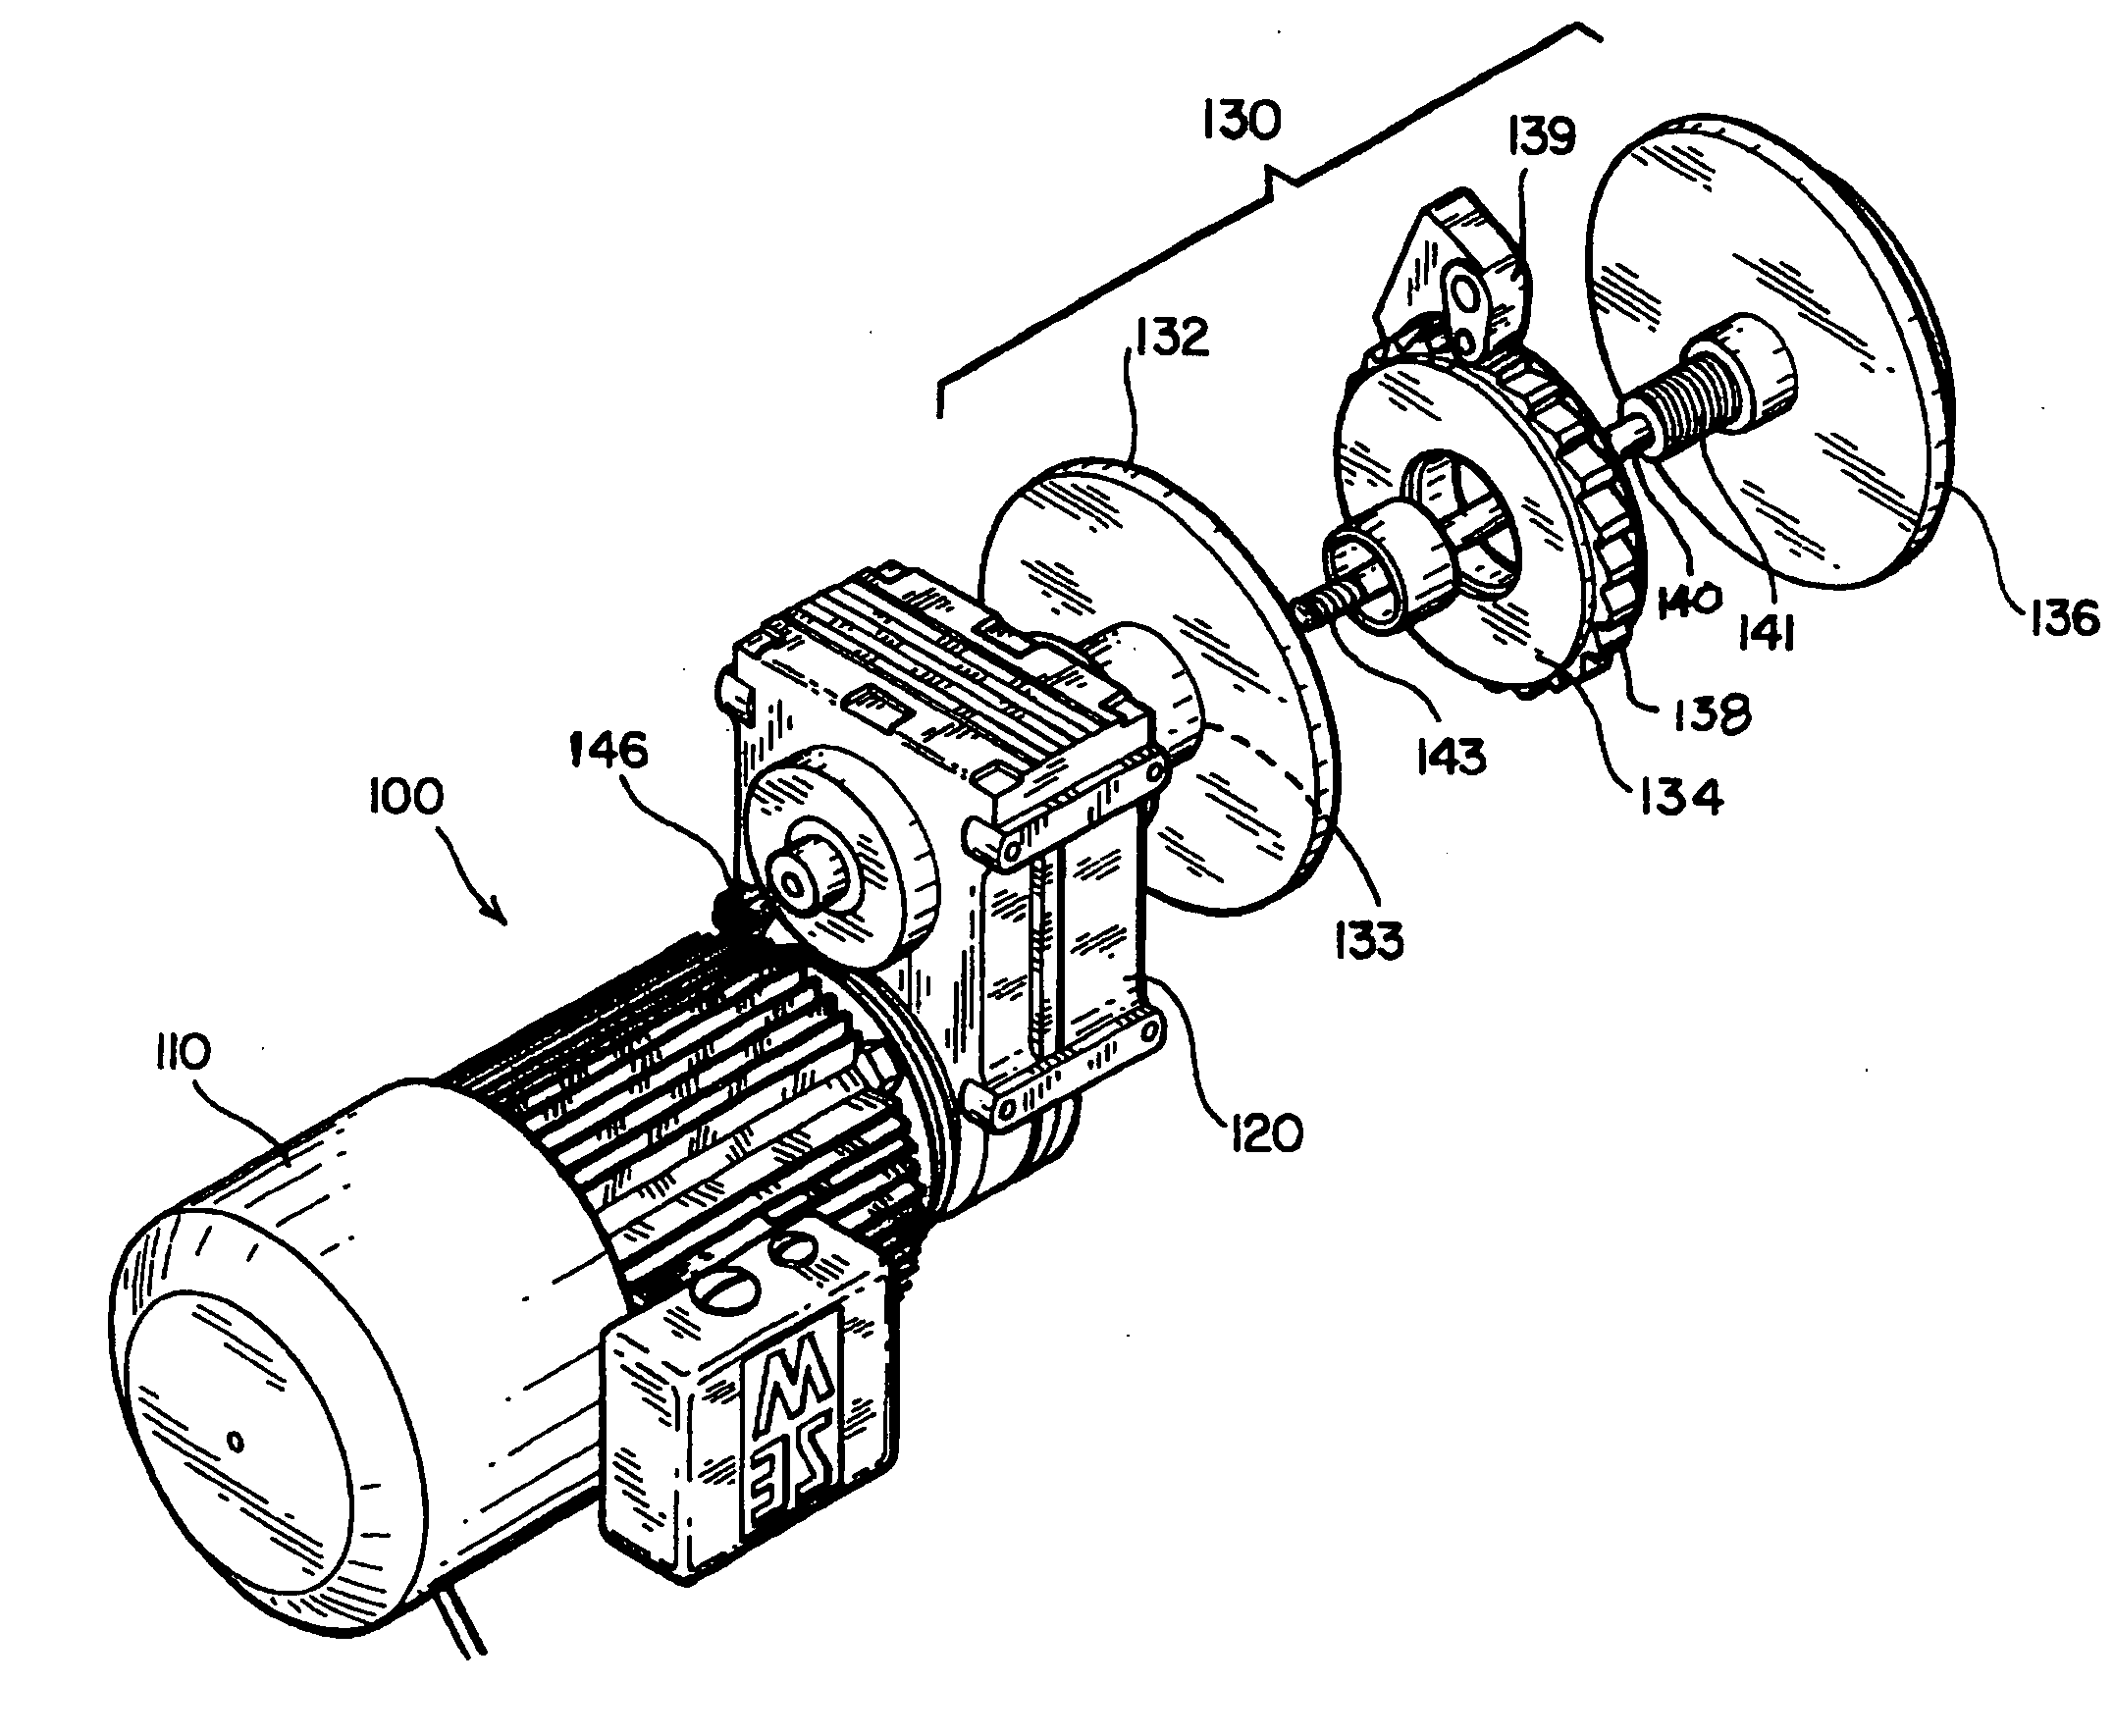 Intermediate brake for modular lift assembly